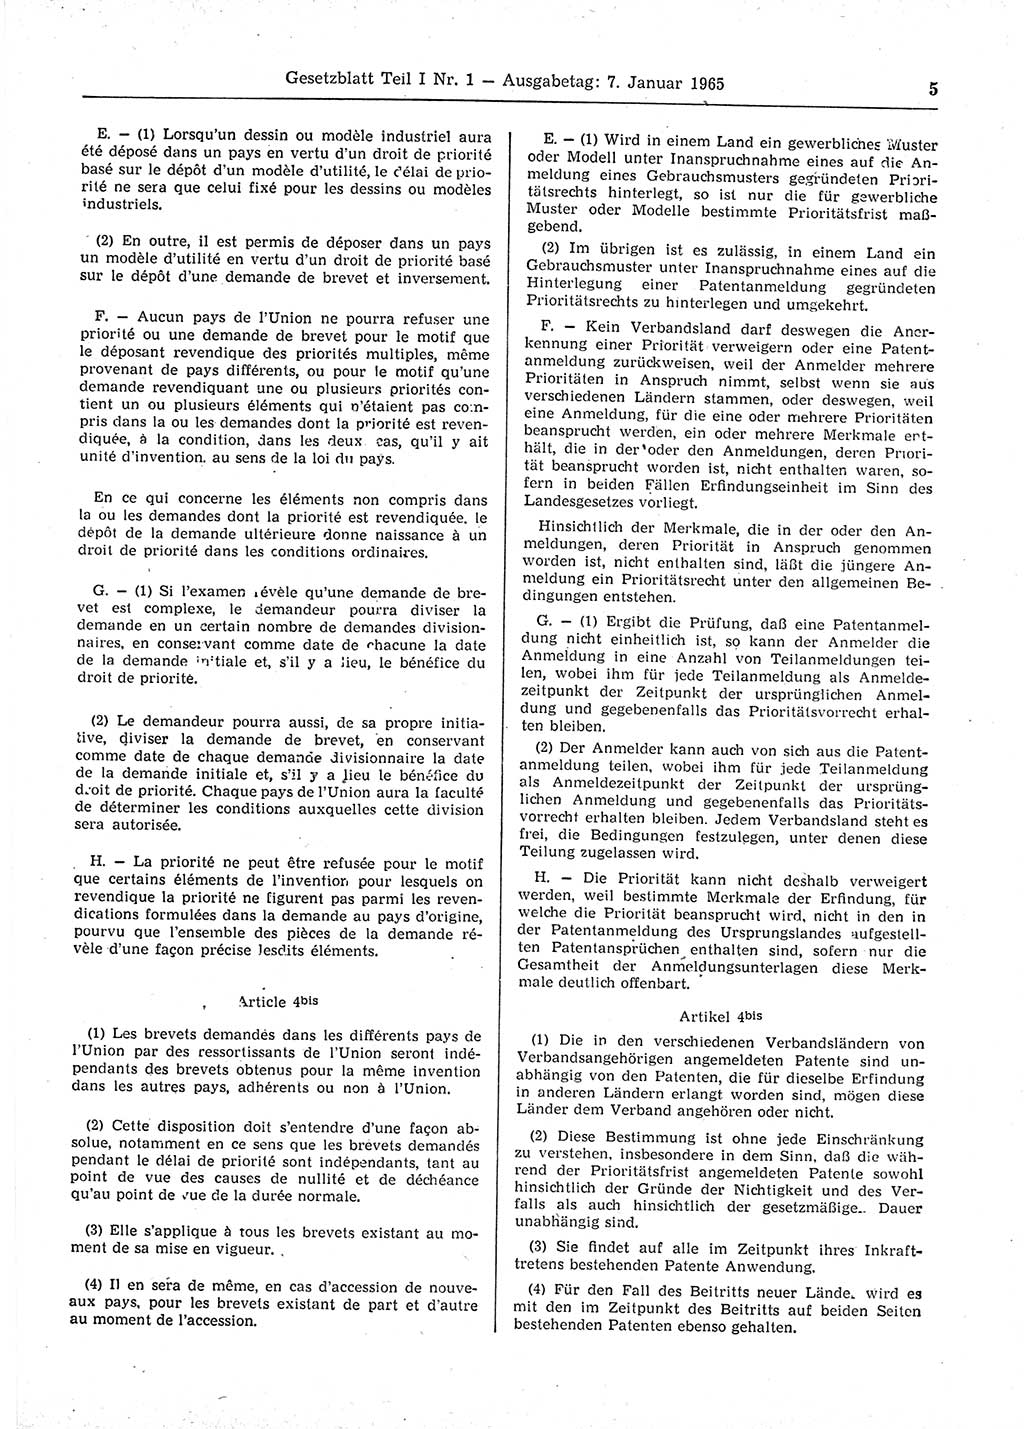 Gesetzblatt (GBl.) der Deutschen Demokratischen Republik (DDR) Teil Ⅰ 1965, Seite 5 (GBl. DDR Ⅰ 1965, S. 5)